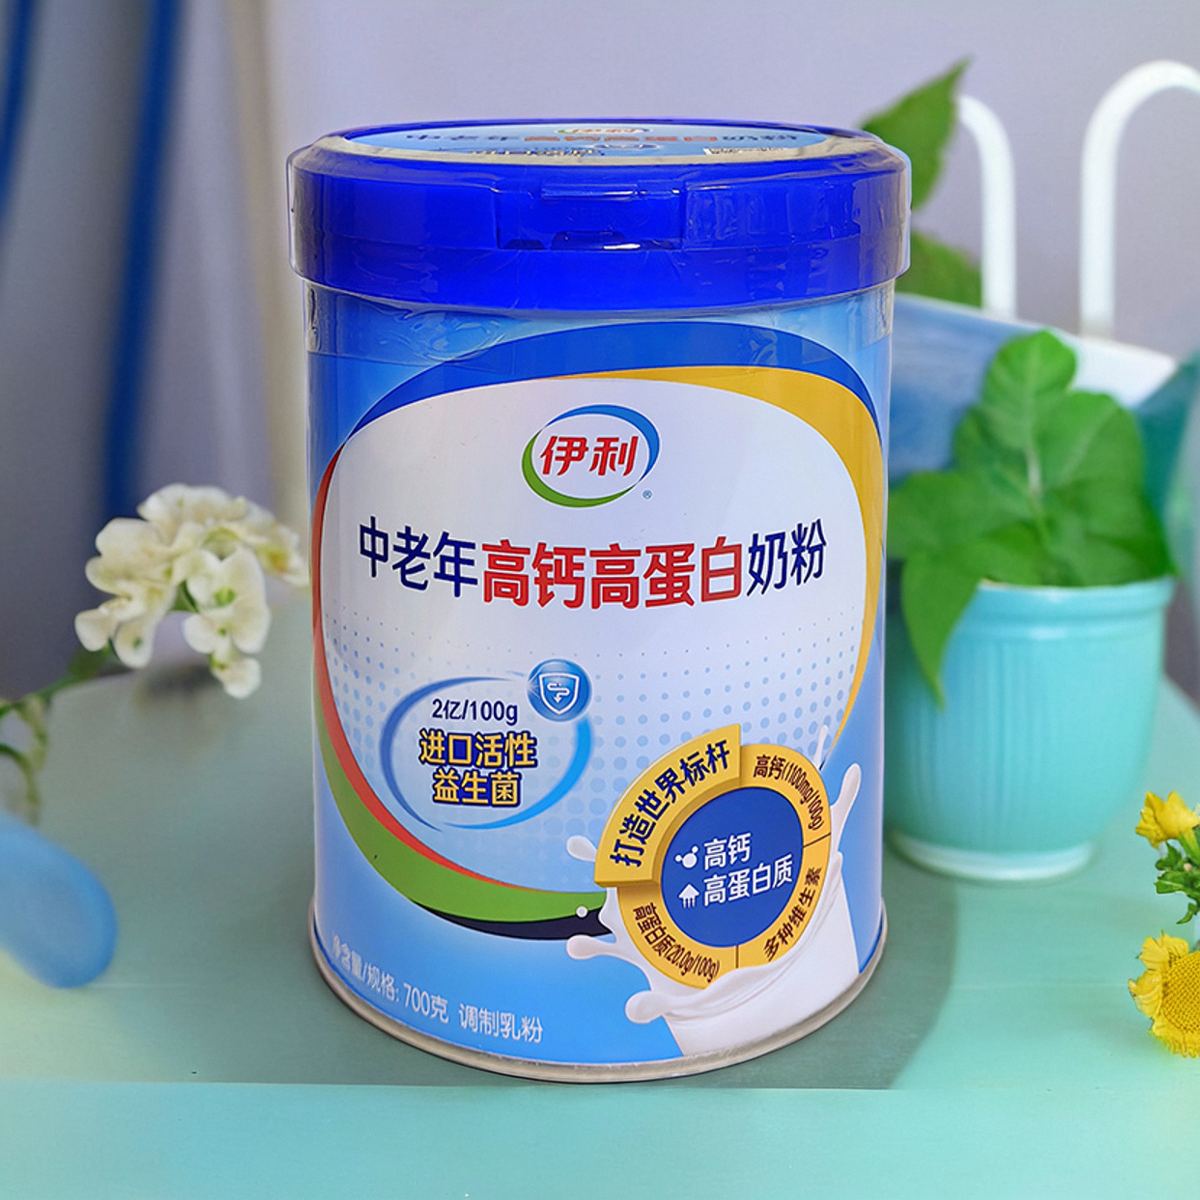 伊利中老年高钙高蛋白奶粉罐装进口活性益生菌早餐调制牛奶粉700g